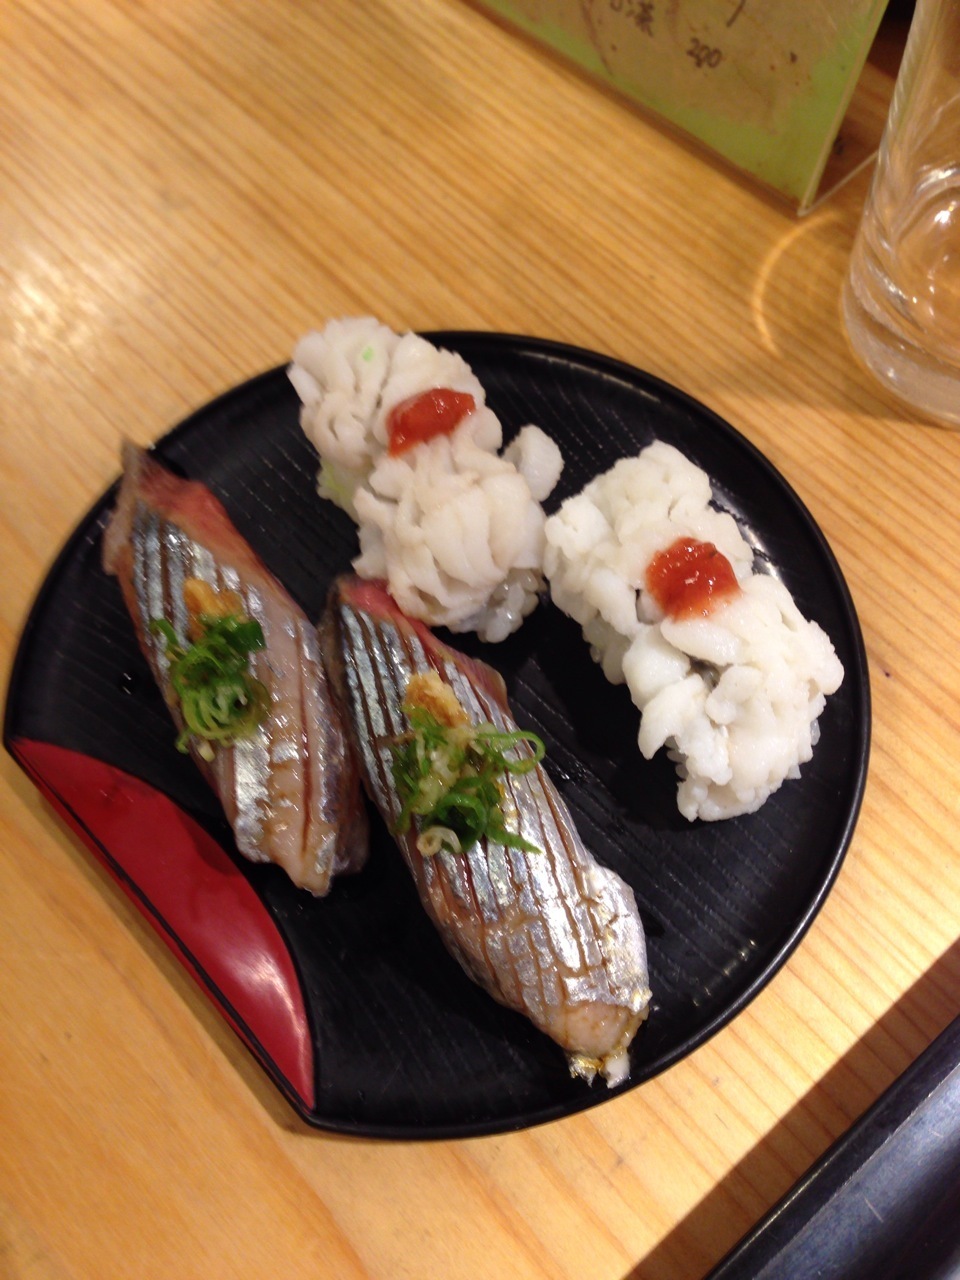 城戸朱理のブログ 錦市場の立ち食い寿司